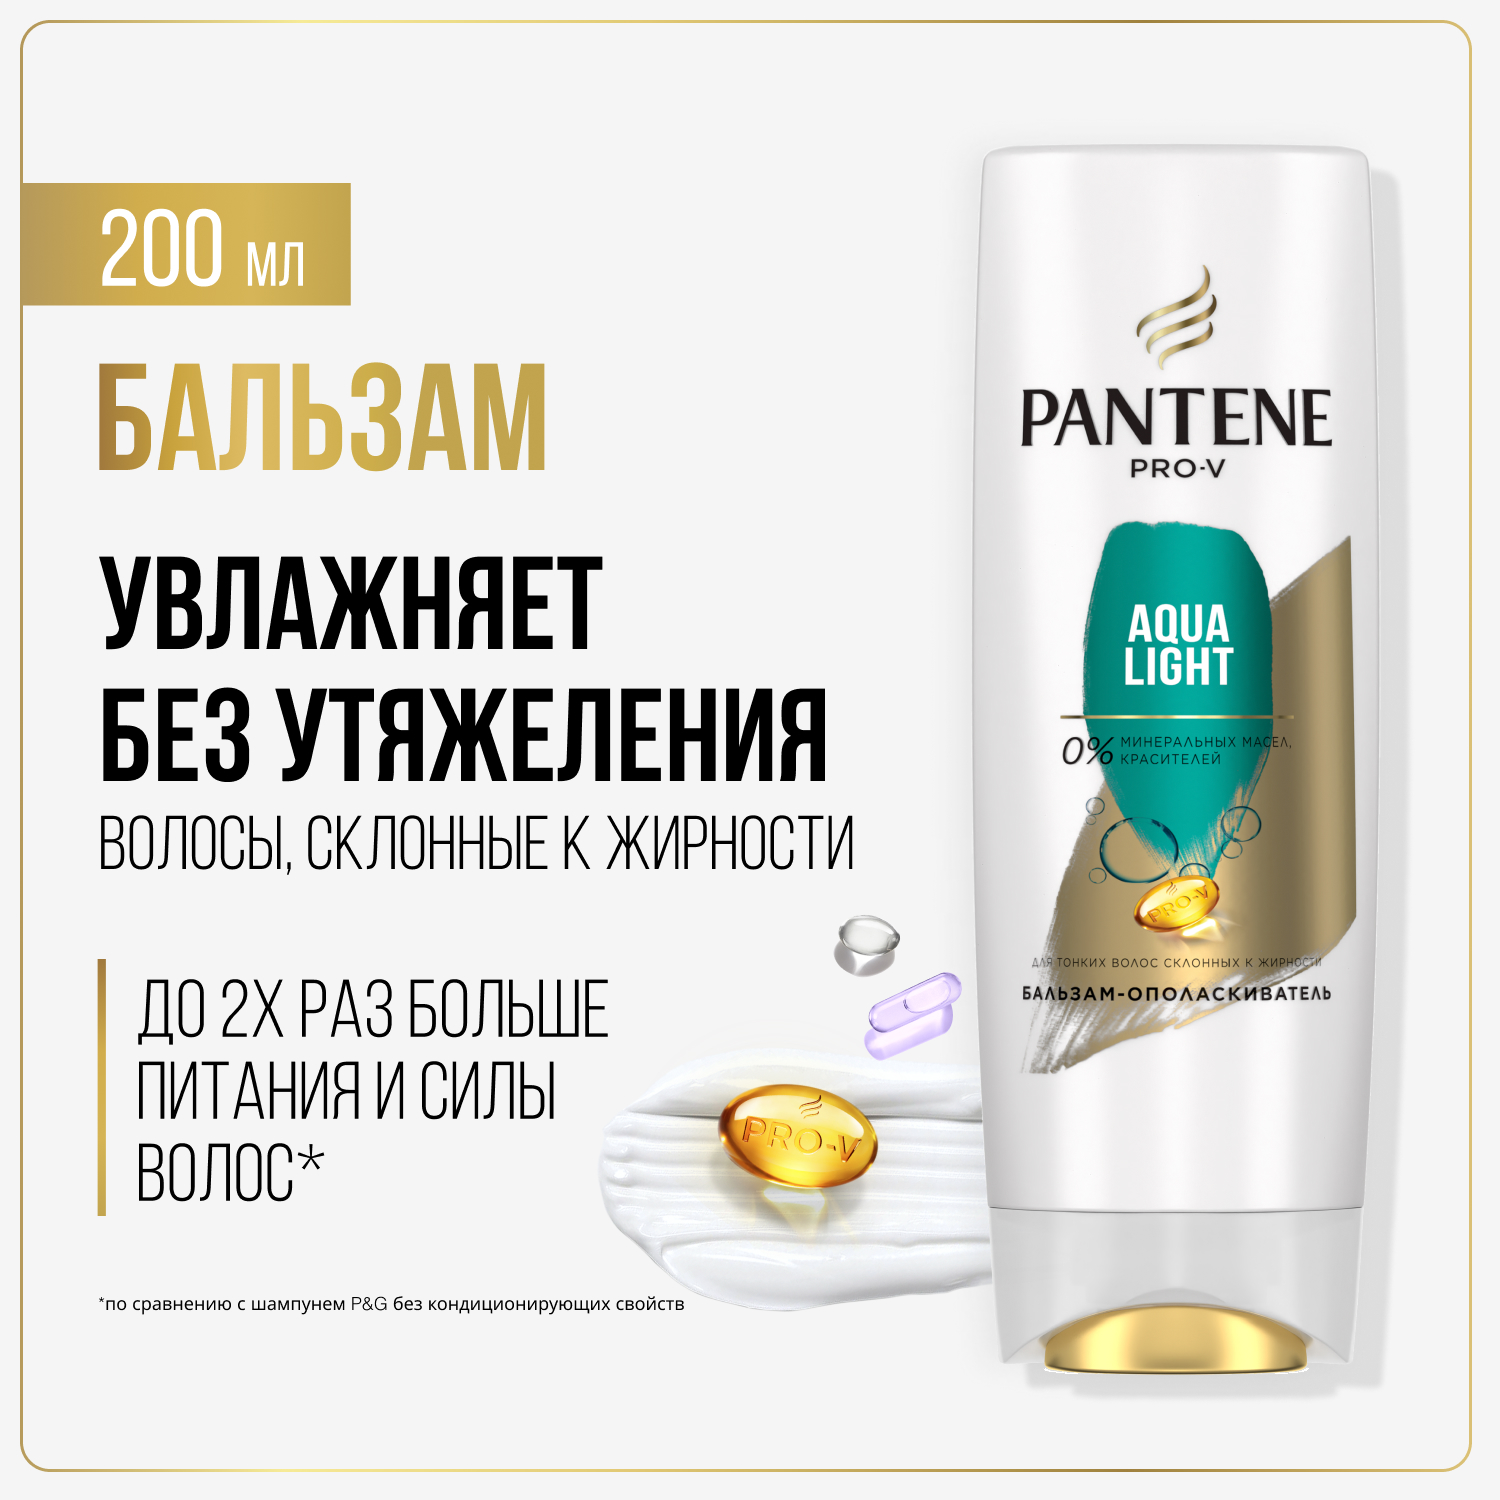 Бальзам для волос Pantene Aqua Light легкий, питательный и укрепляющий 200 мл